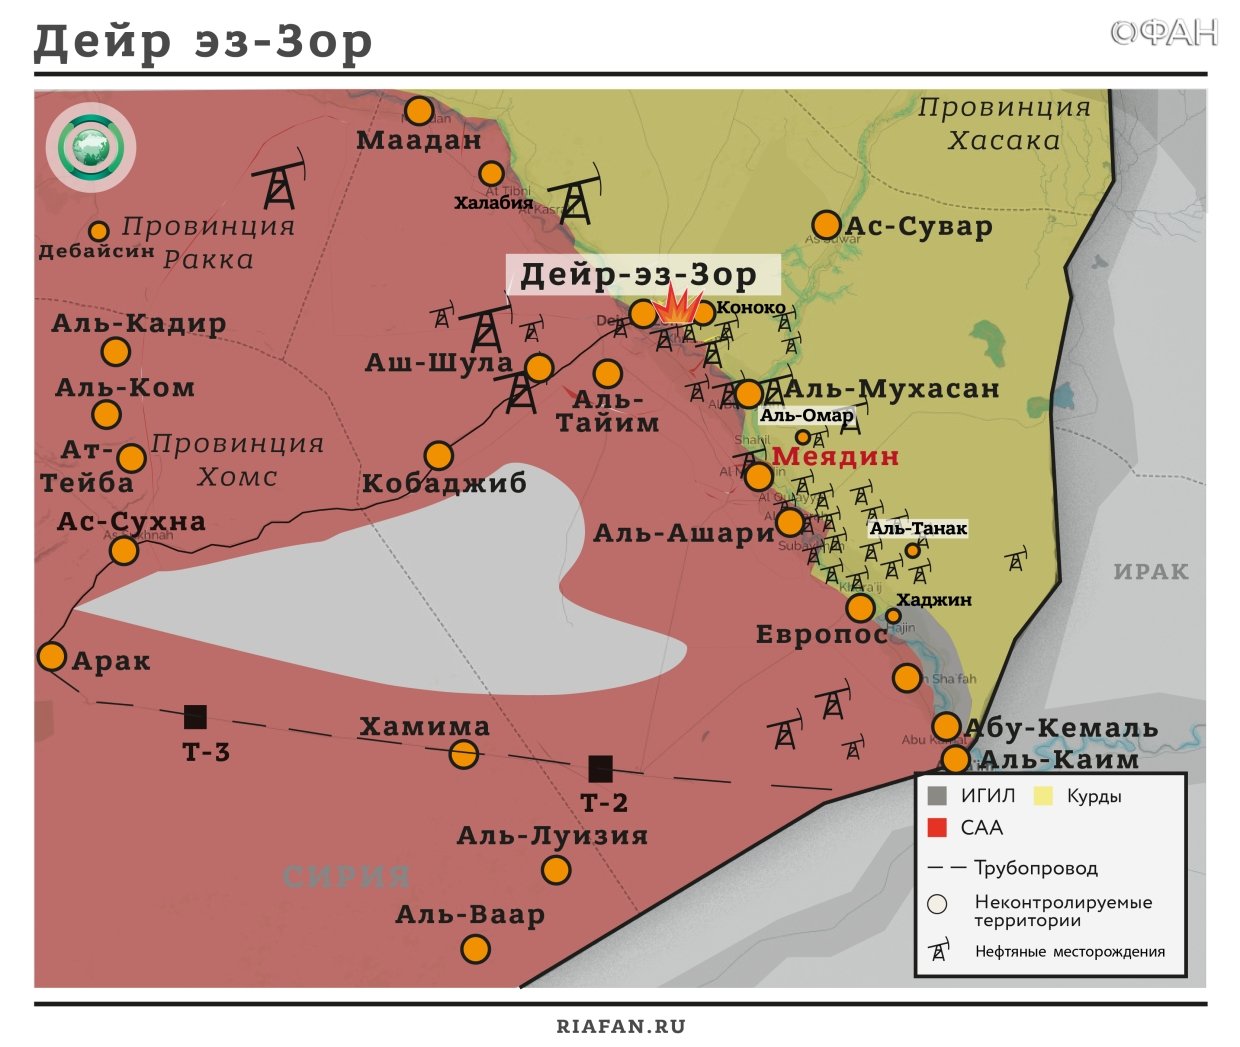 Сирия новости 19 октября 19.30: десятки гражданских погибли под ударами ВВС коалиции в Дейр-эз-Зоре, «Ан-Нусра» арестовала несколько жителей Хамы